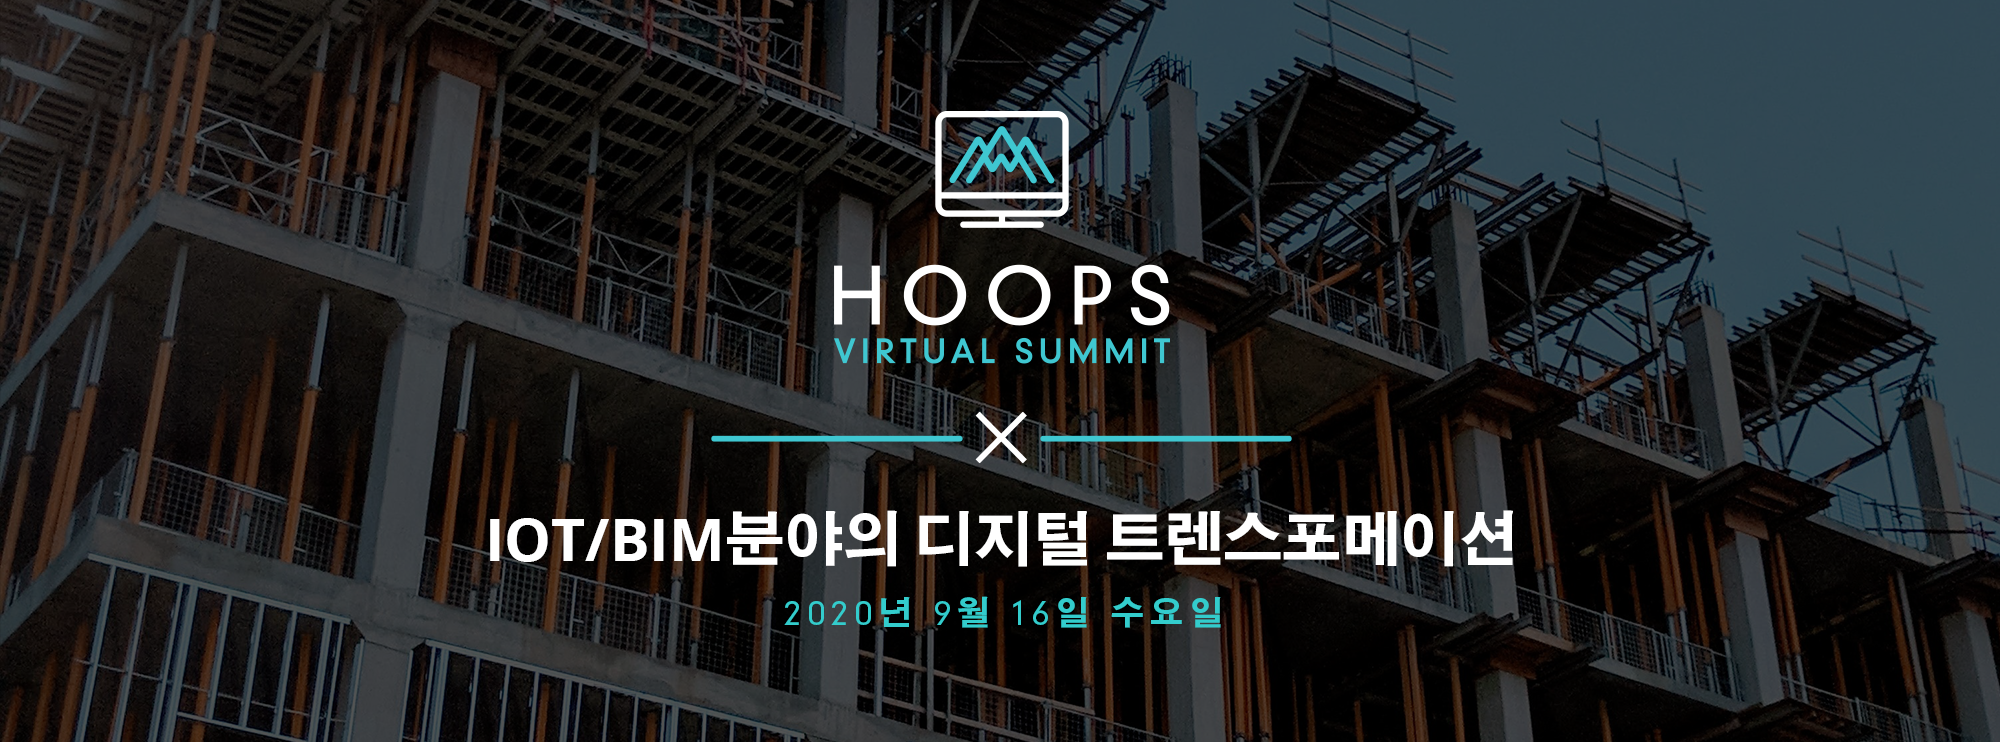 Korea HOOPS Virtual Summit Banner Building